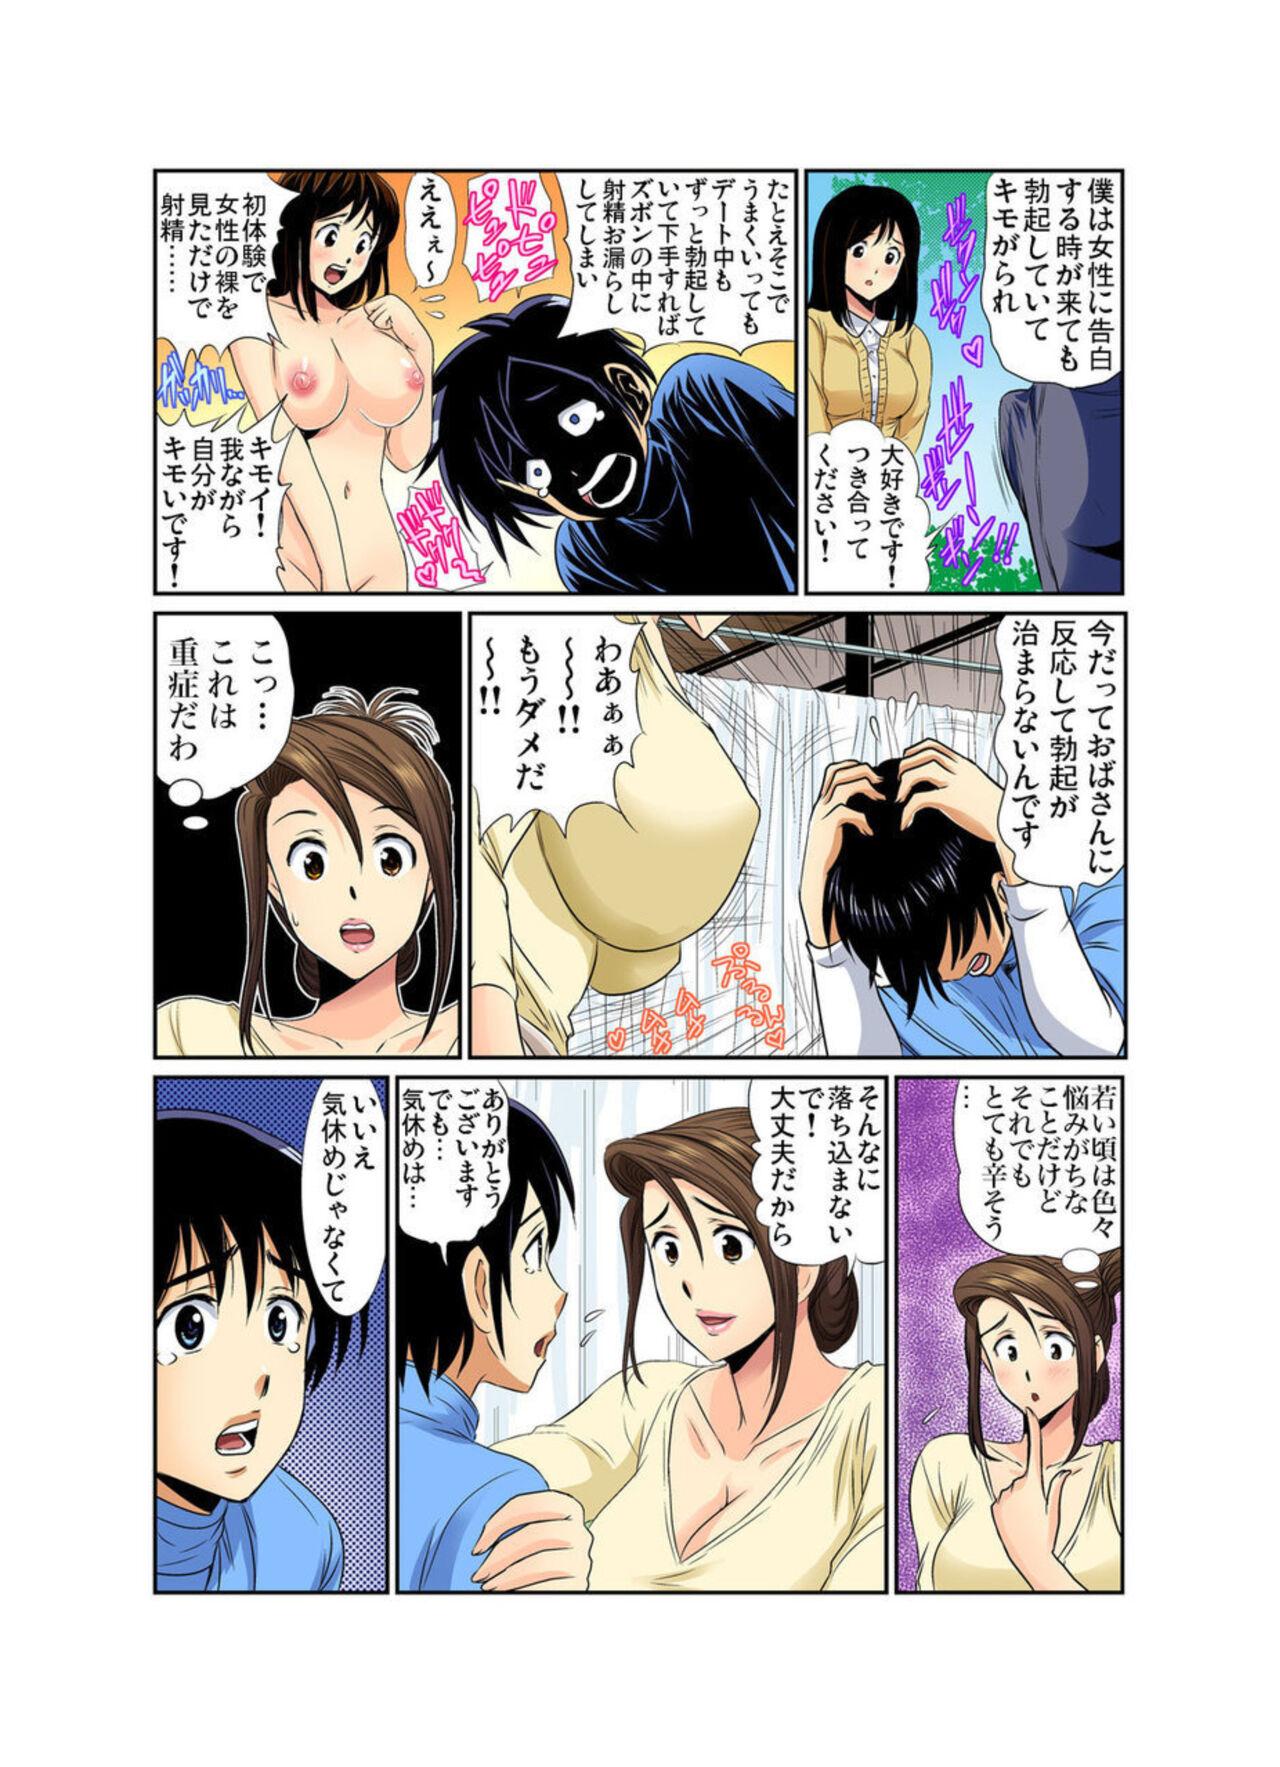 Gaping Erosugiru Tokoya no Obasan ~Otona no Option wa Ikaga? 7 Close Up - Page 8